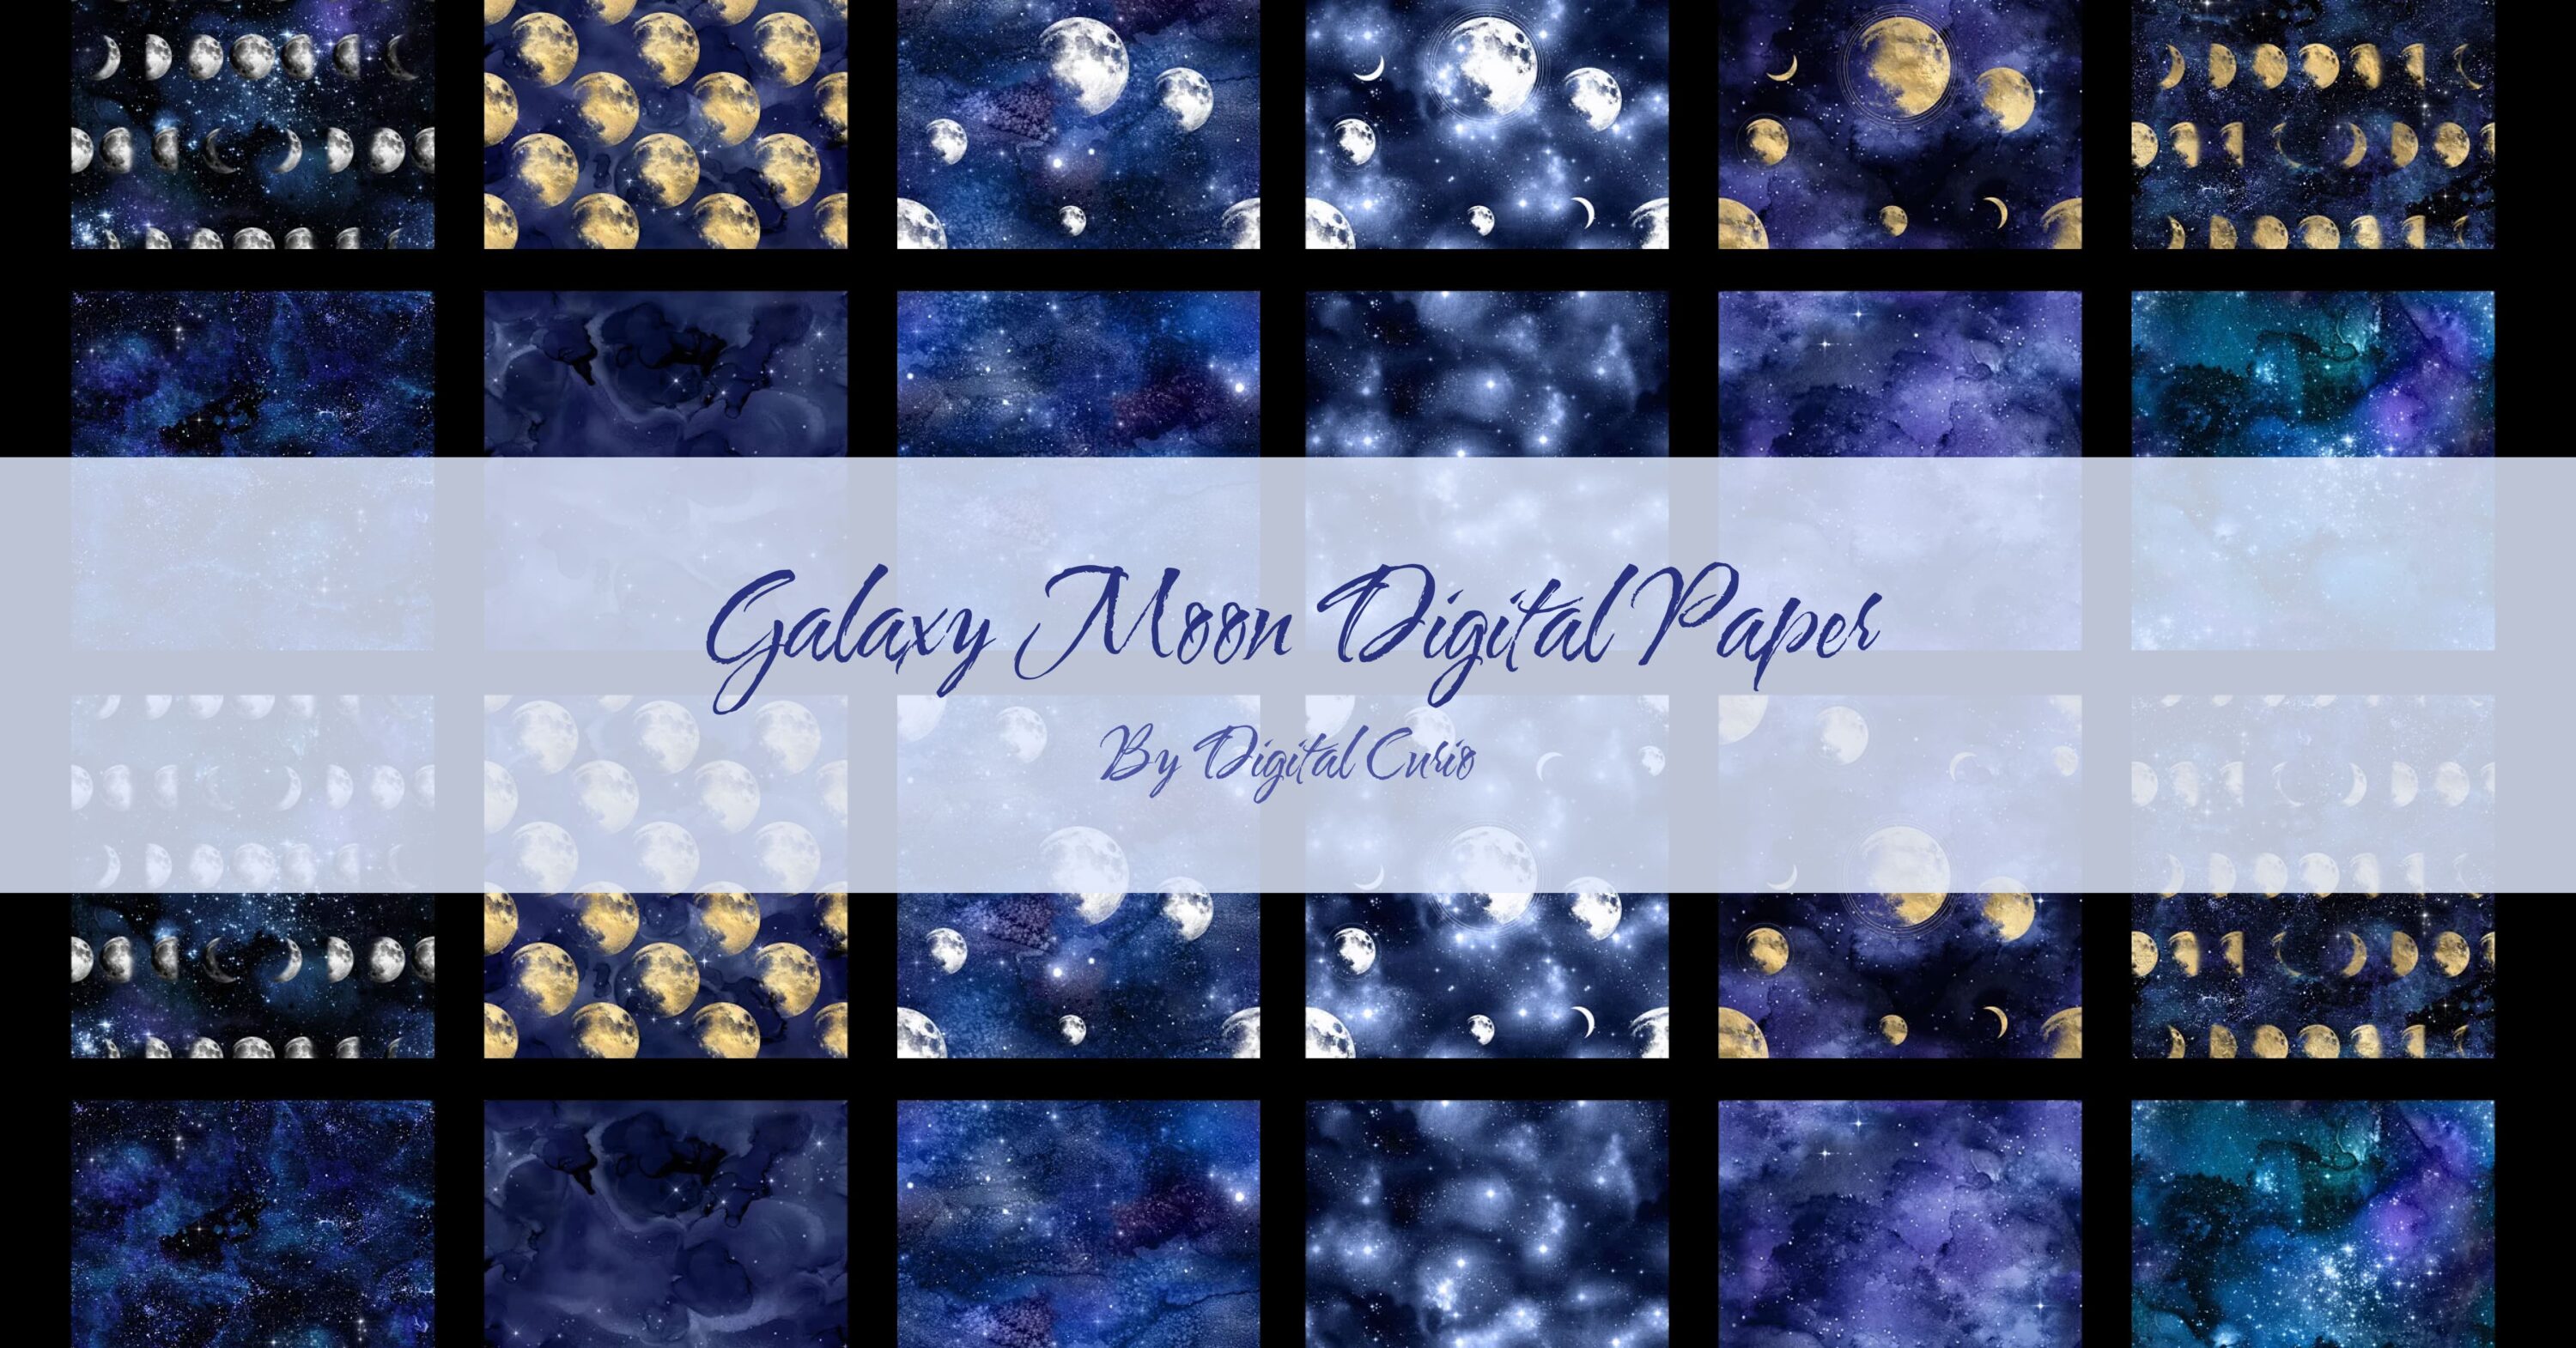 Galaxy Moon Digital Paper facebook image.